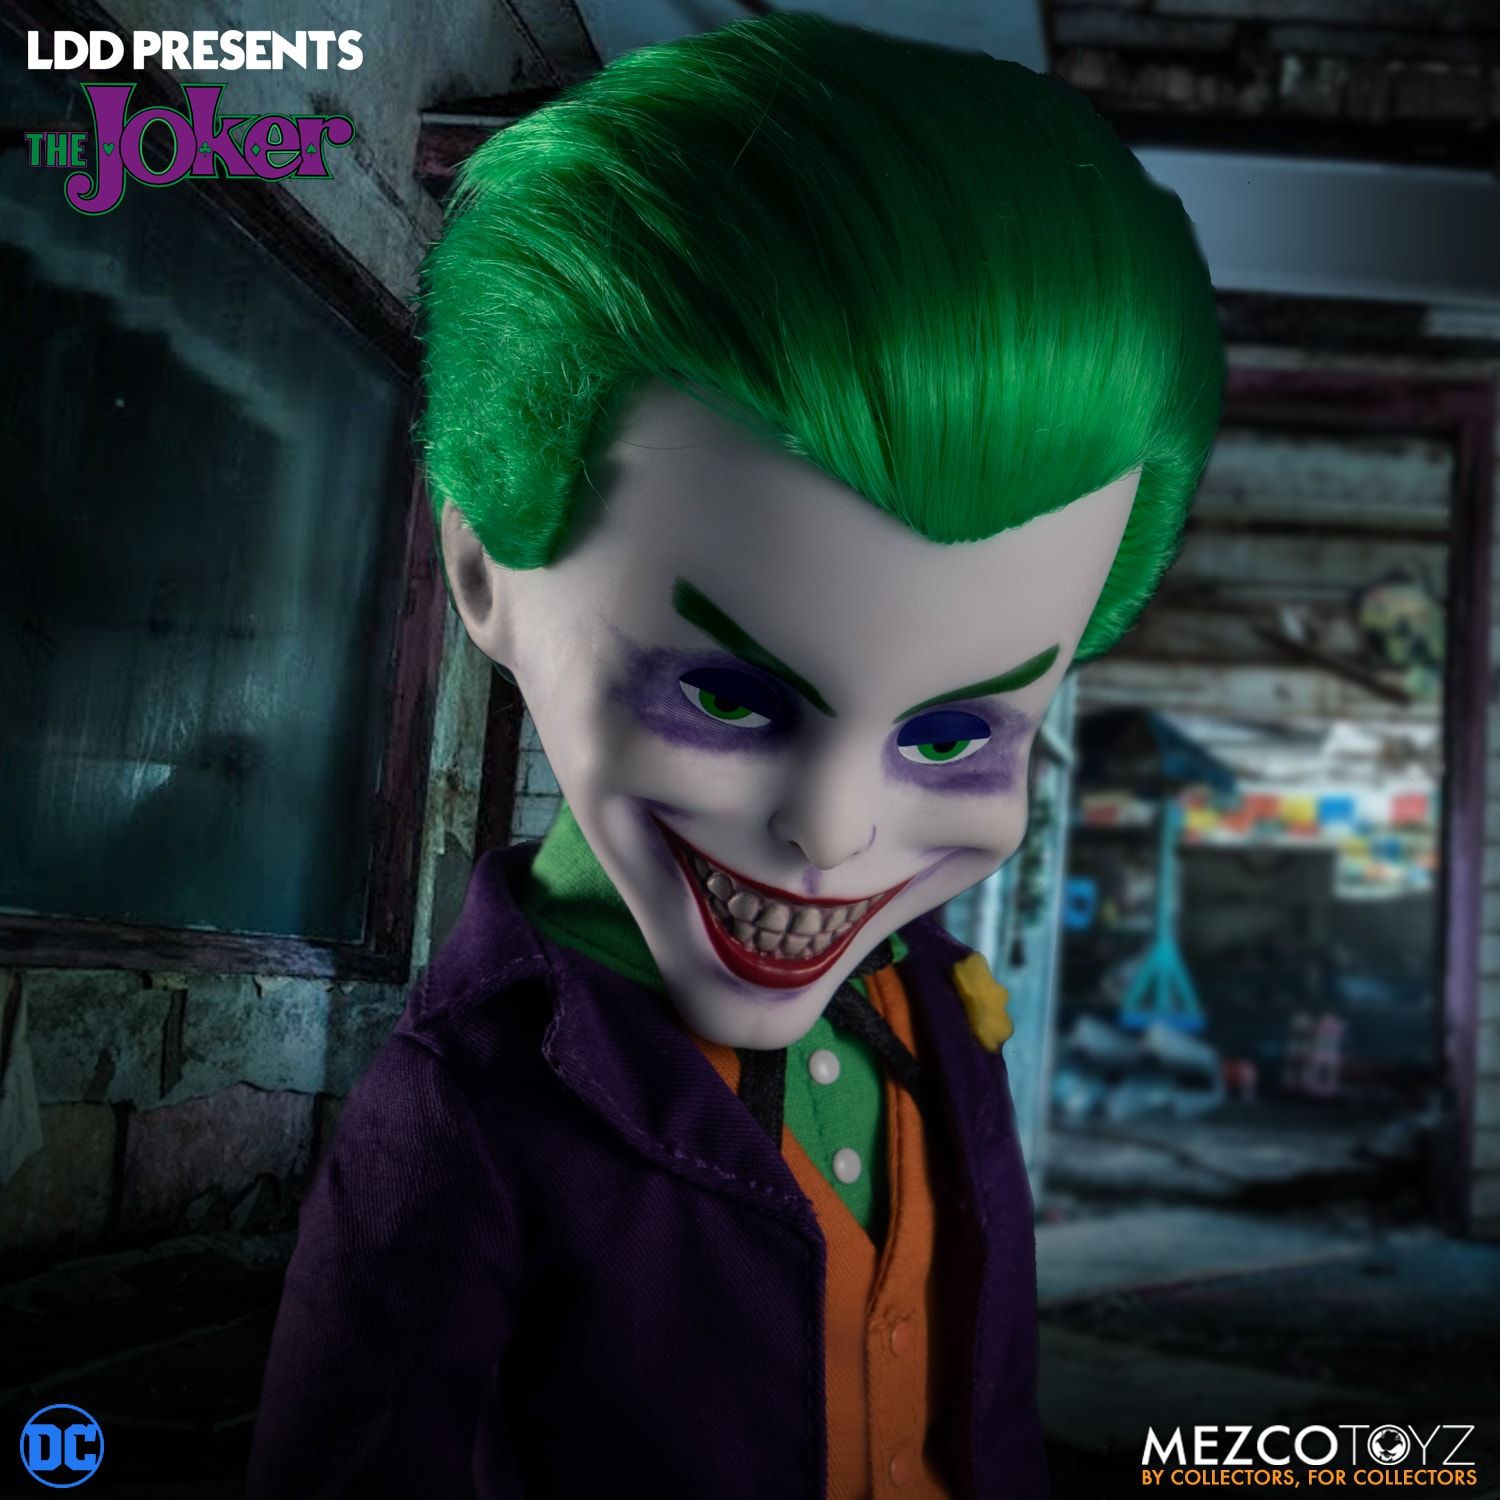 Joker's a doll